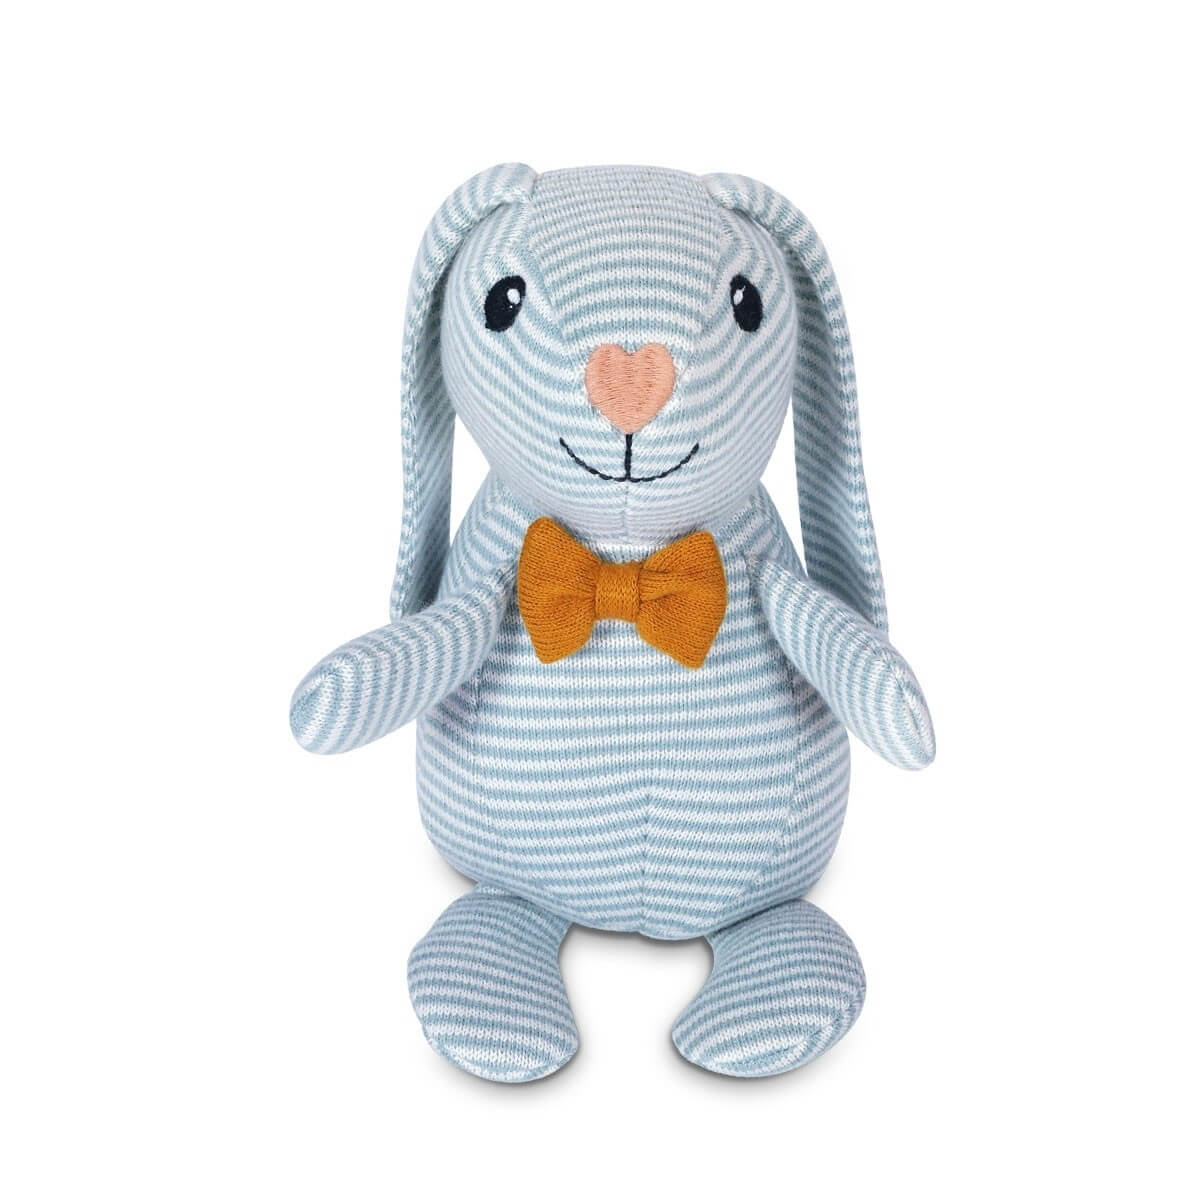 Dapper Knit Patterned Bunny Plush Toy - Apple Park